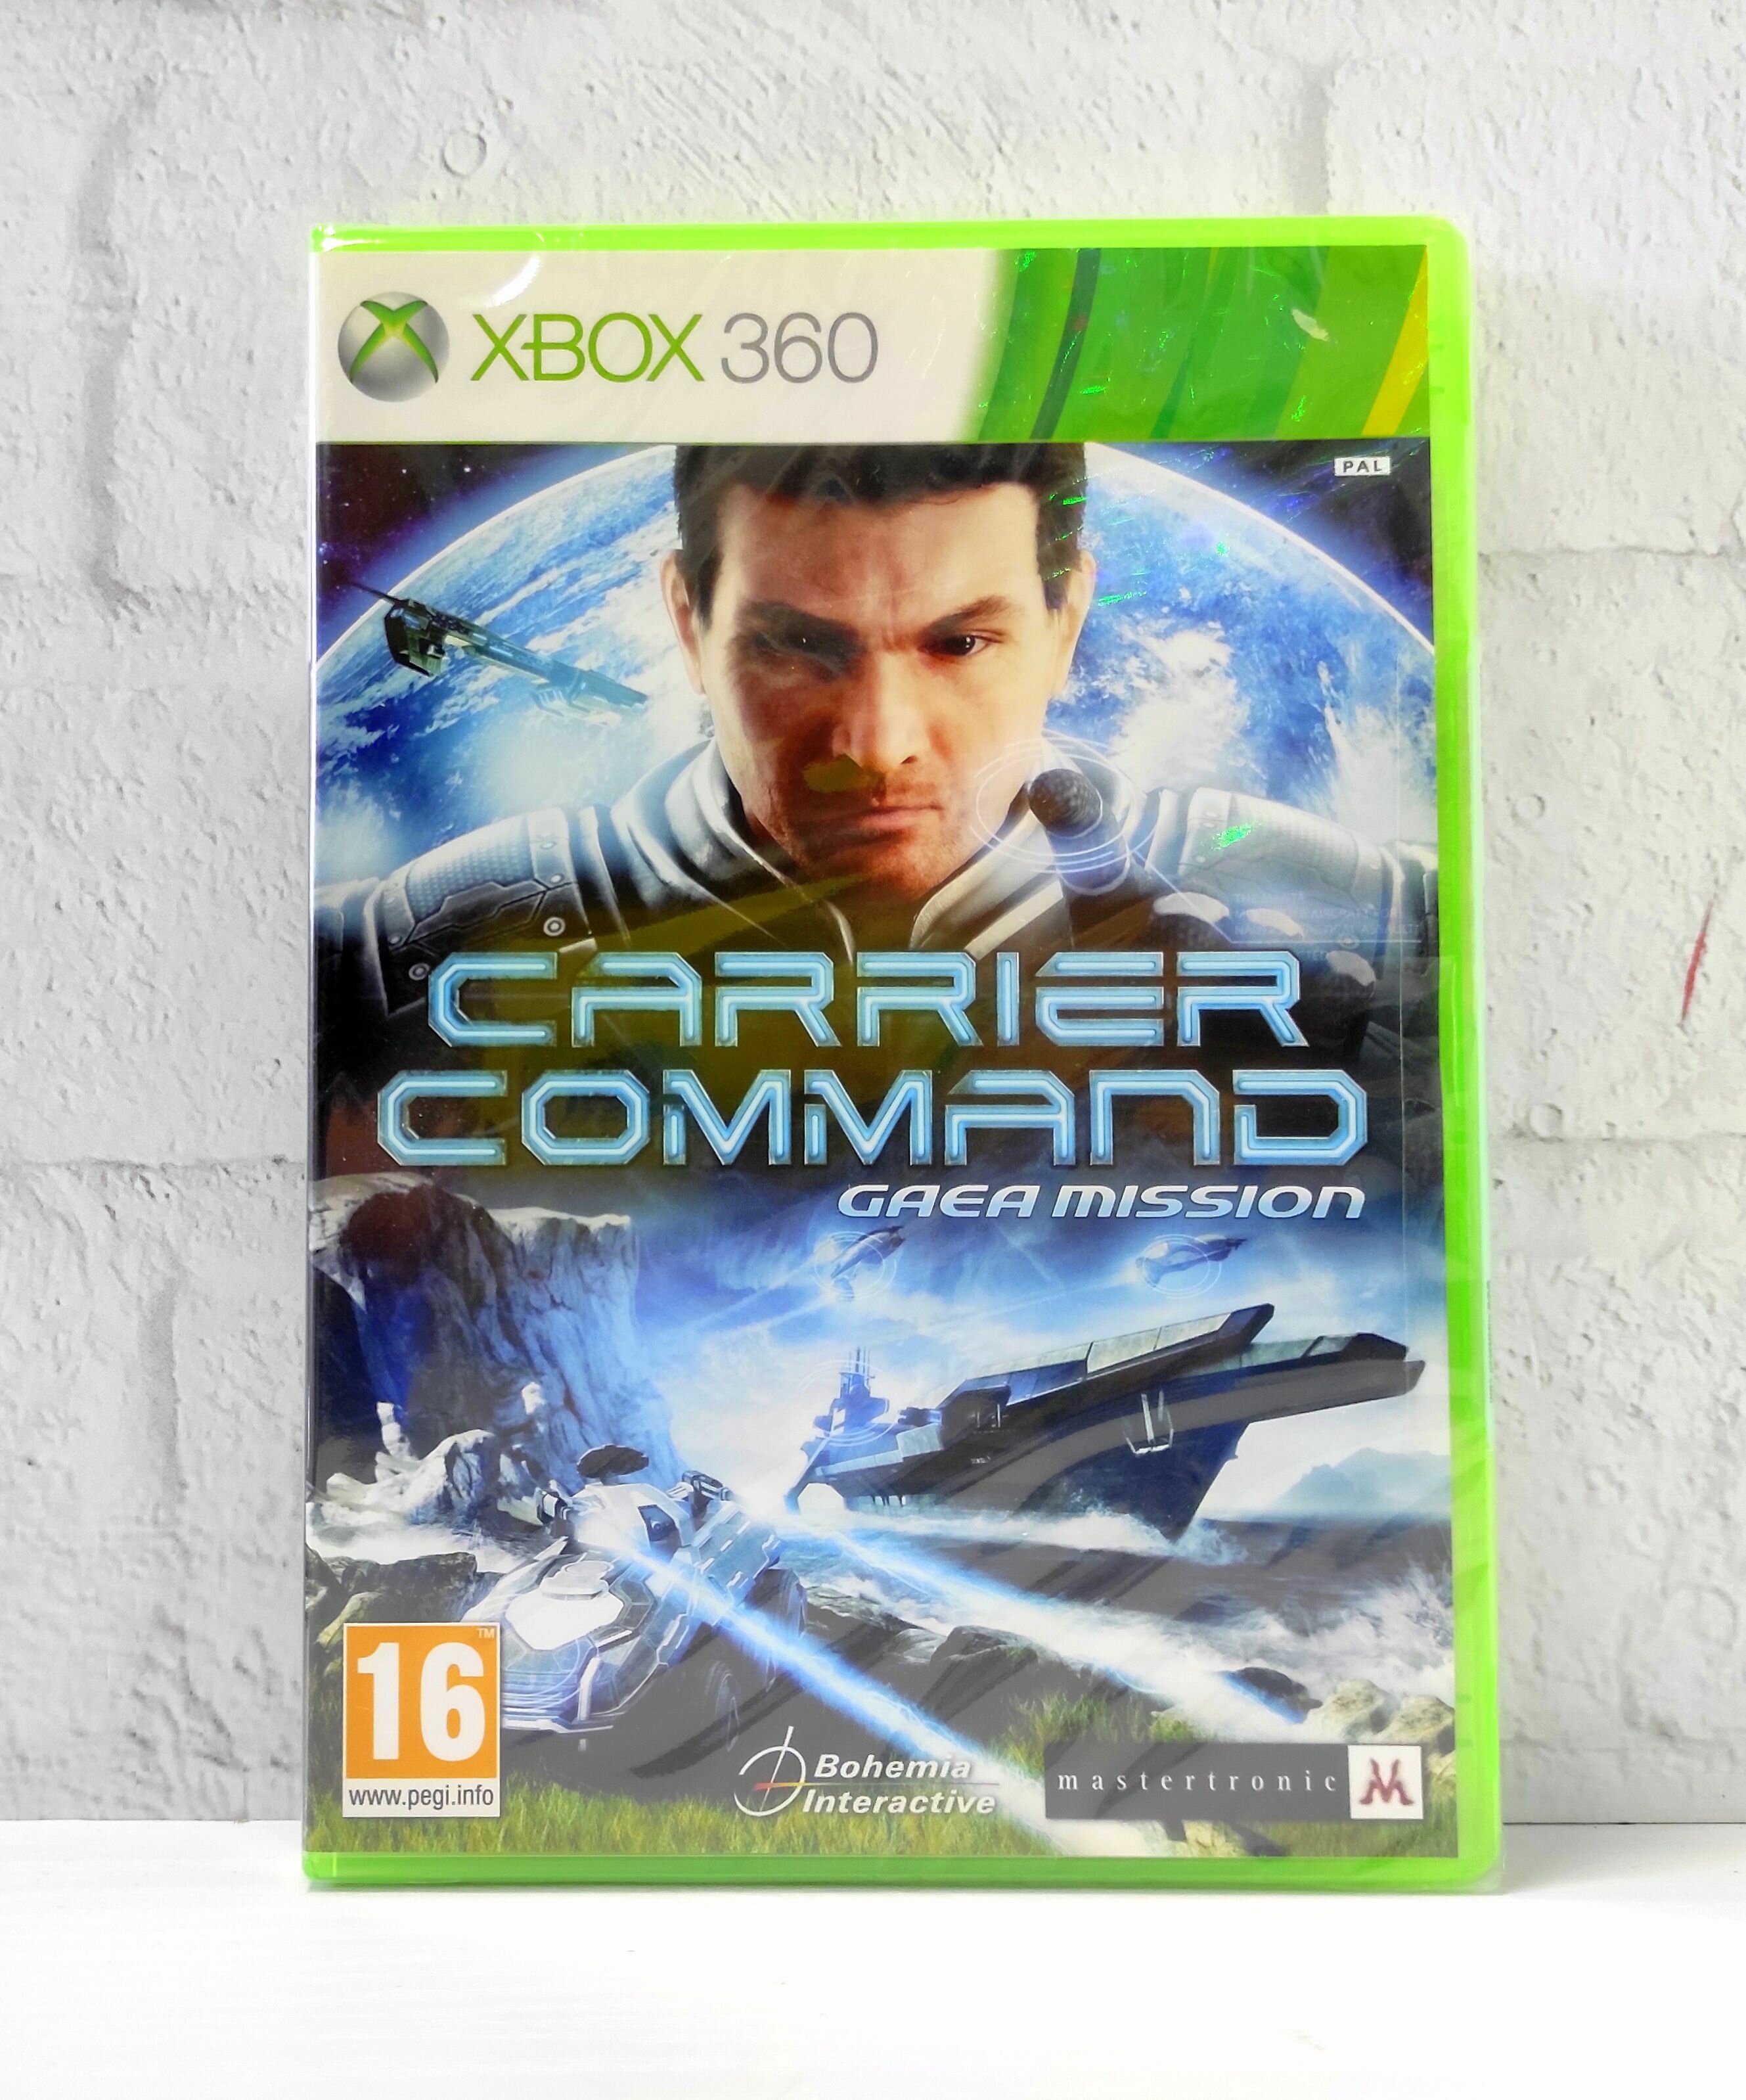 Carrier Command Gaea Mission Видеоигра на диске Xbox 360